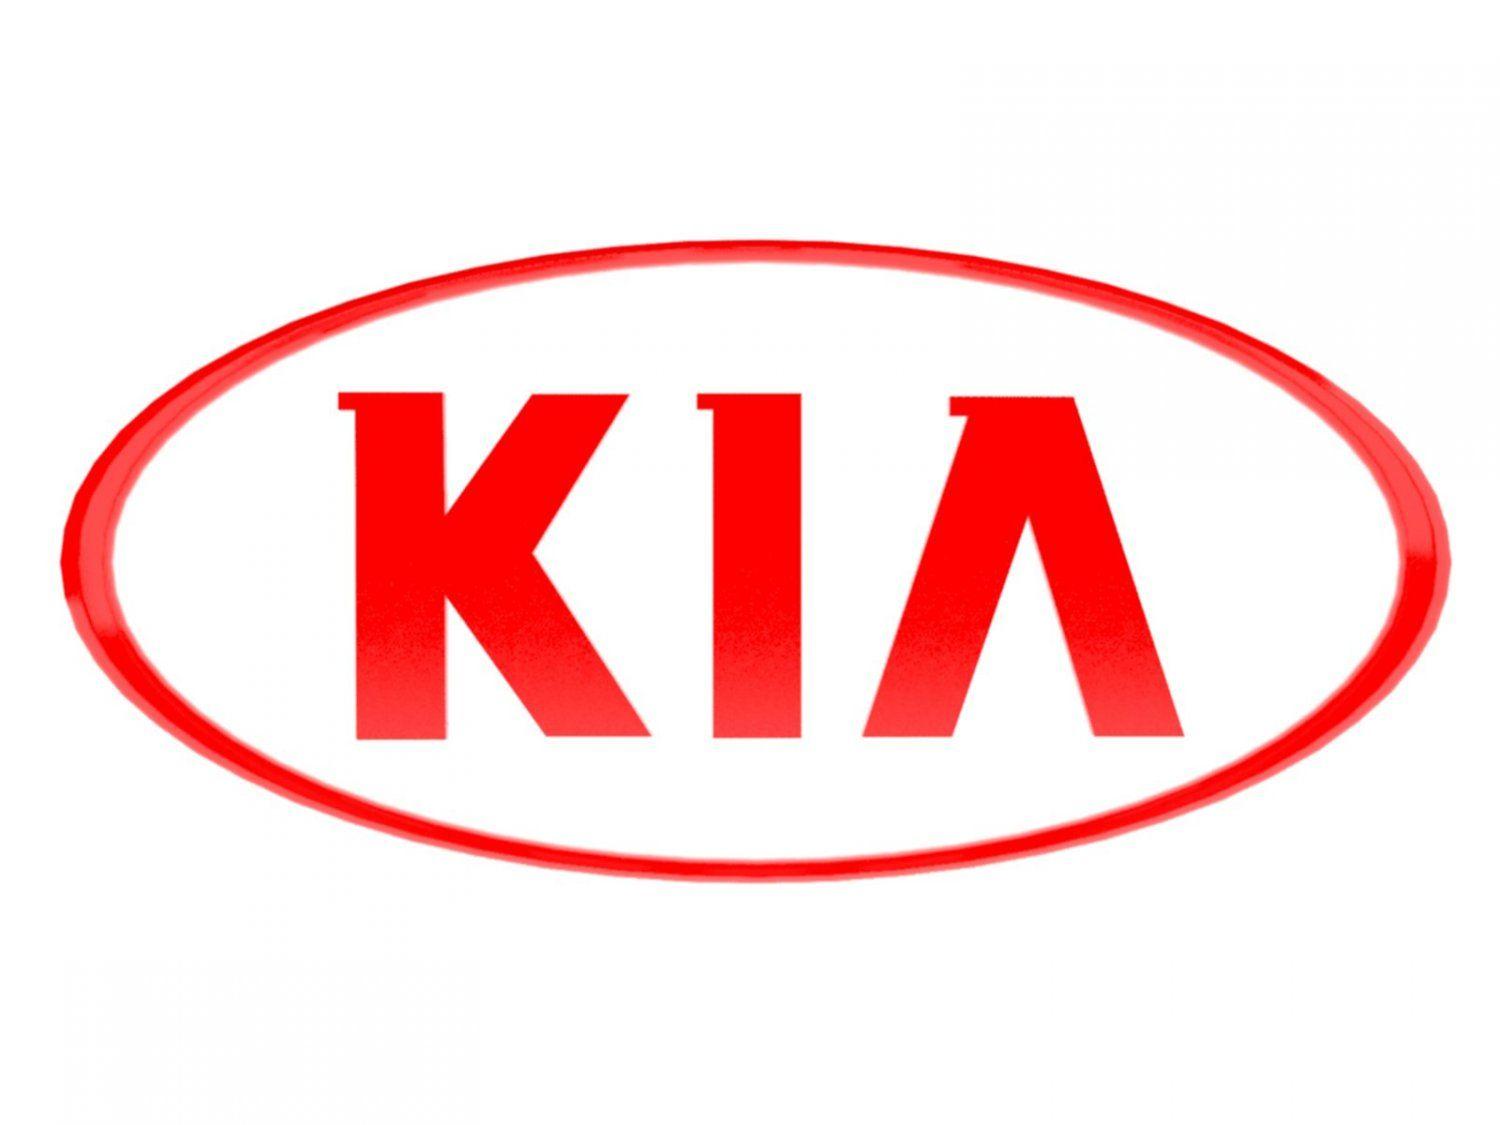 Kia Logo - Kia alternate Logos